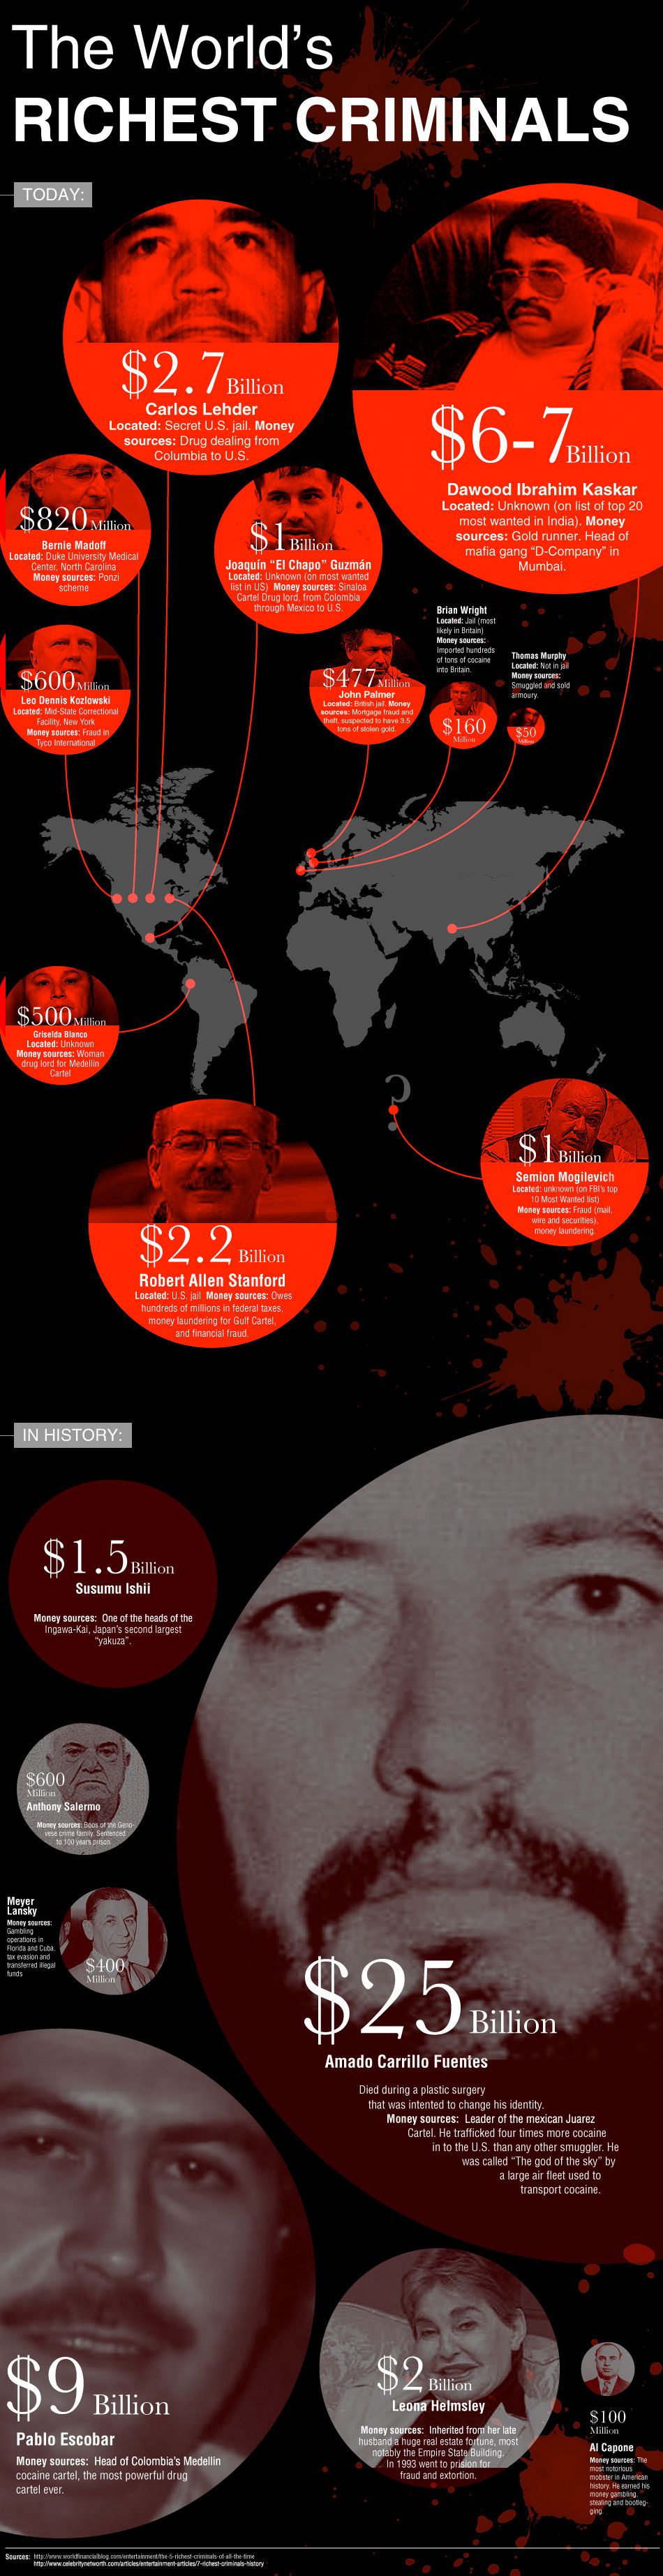 Richest criminals around the world